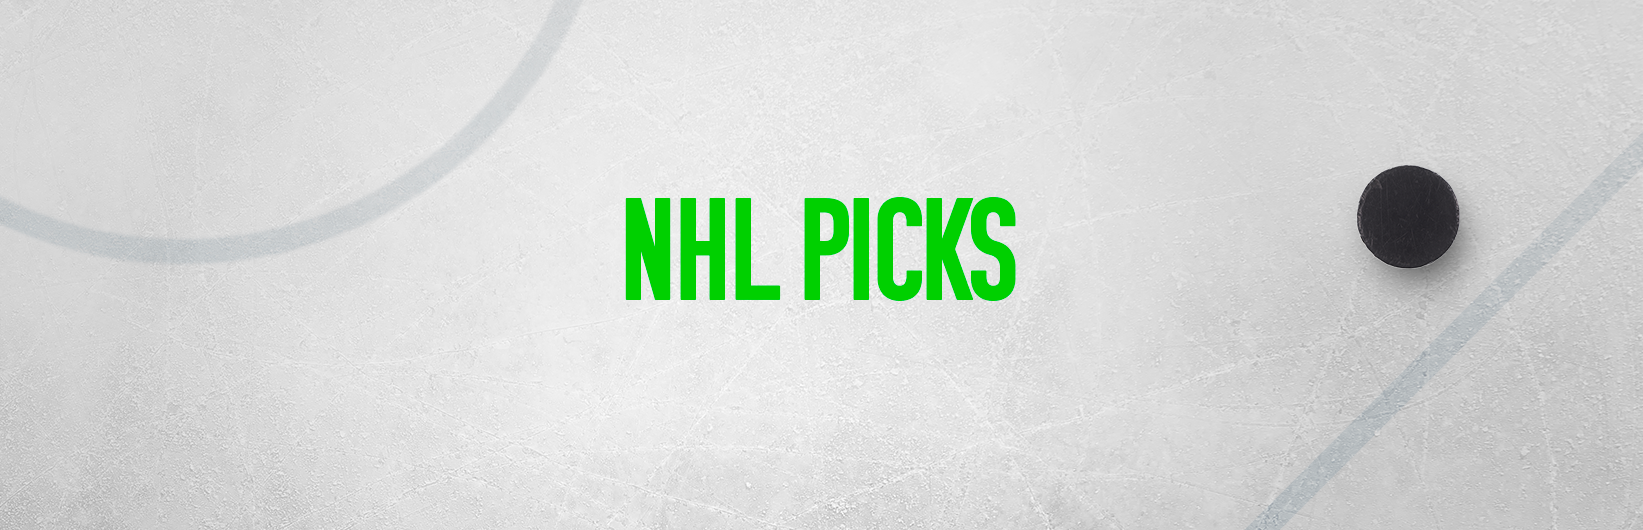 NHL picks: Best bets for Thursday November 9